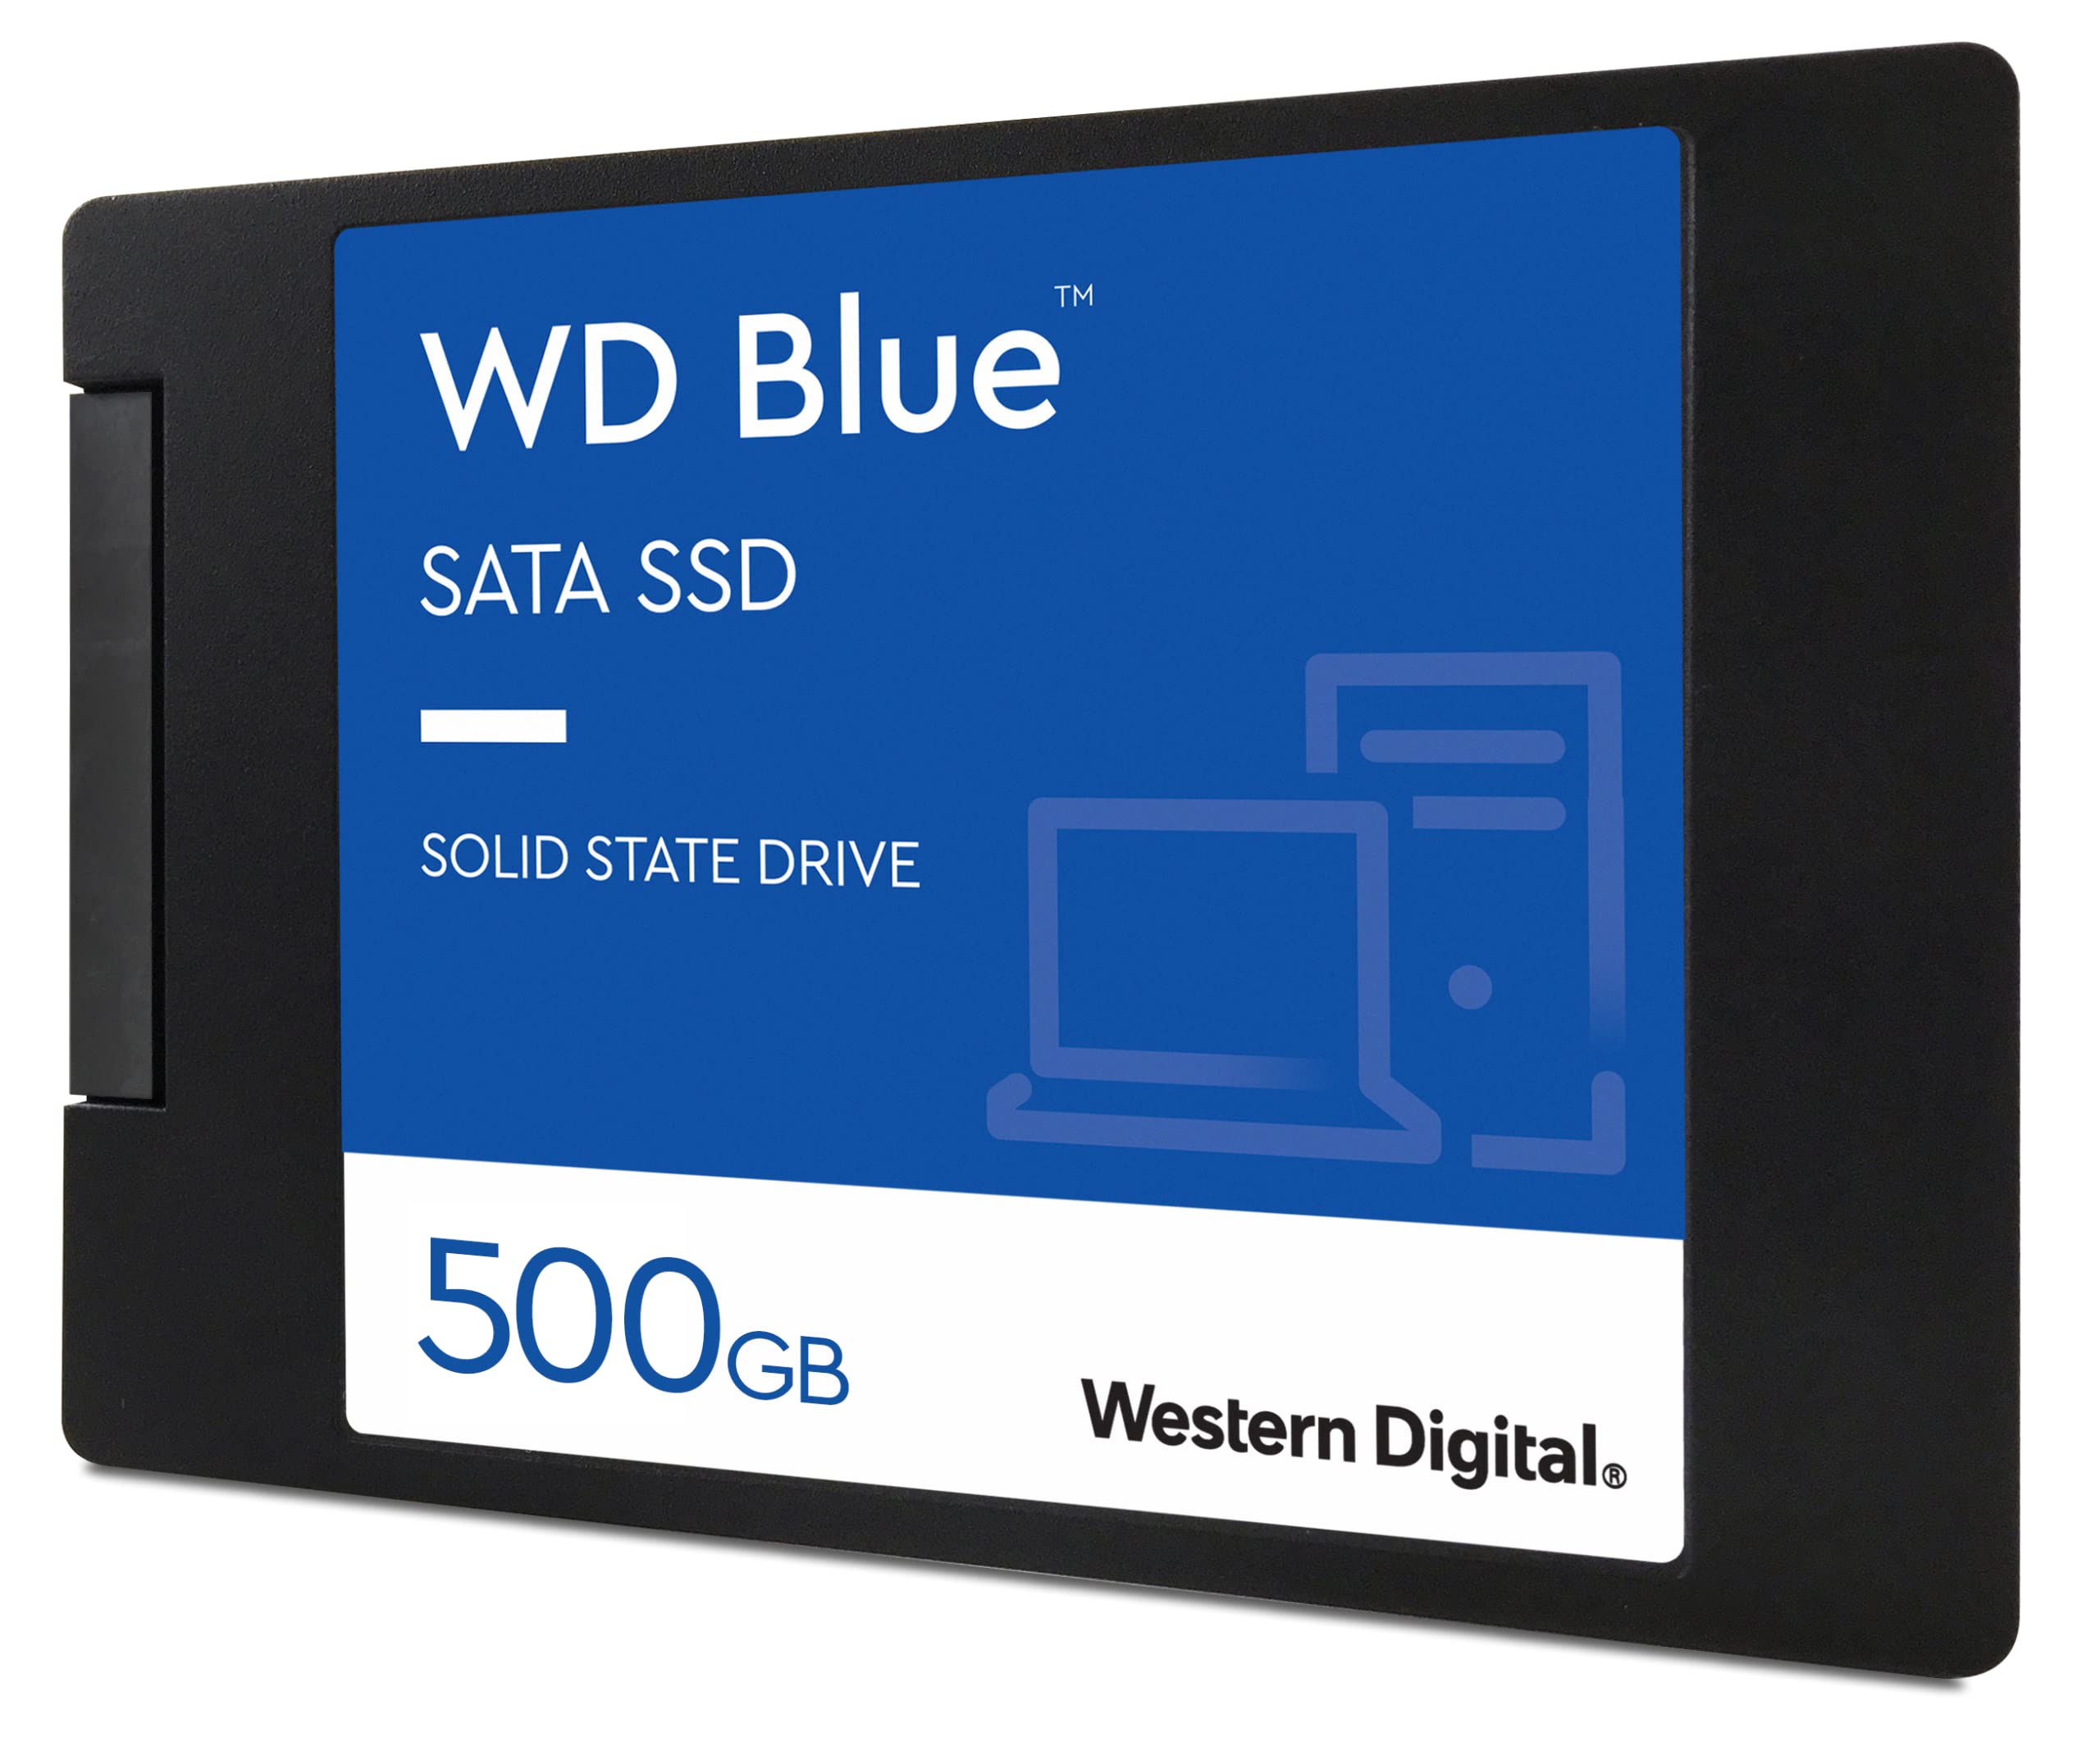 Western Digital 500GB WD Blue 3D NAND Internal PC SSD - SATA III 6 Gb/s, 2.5